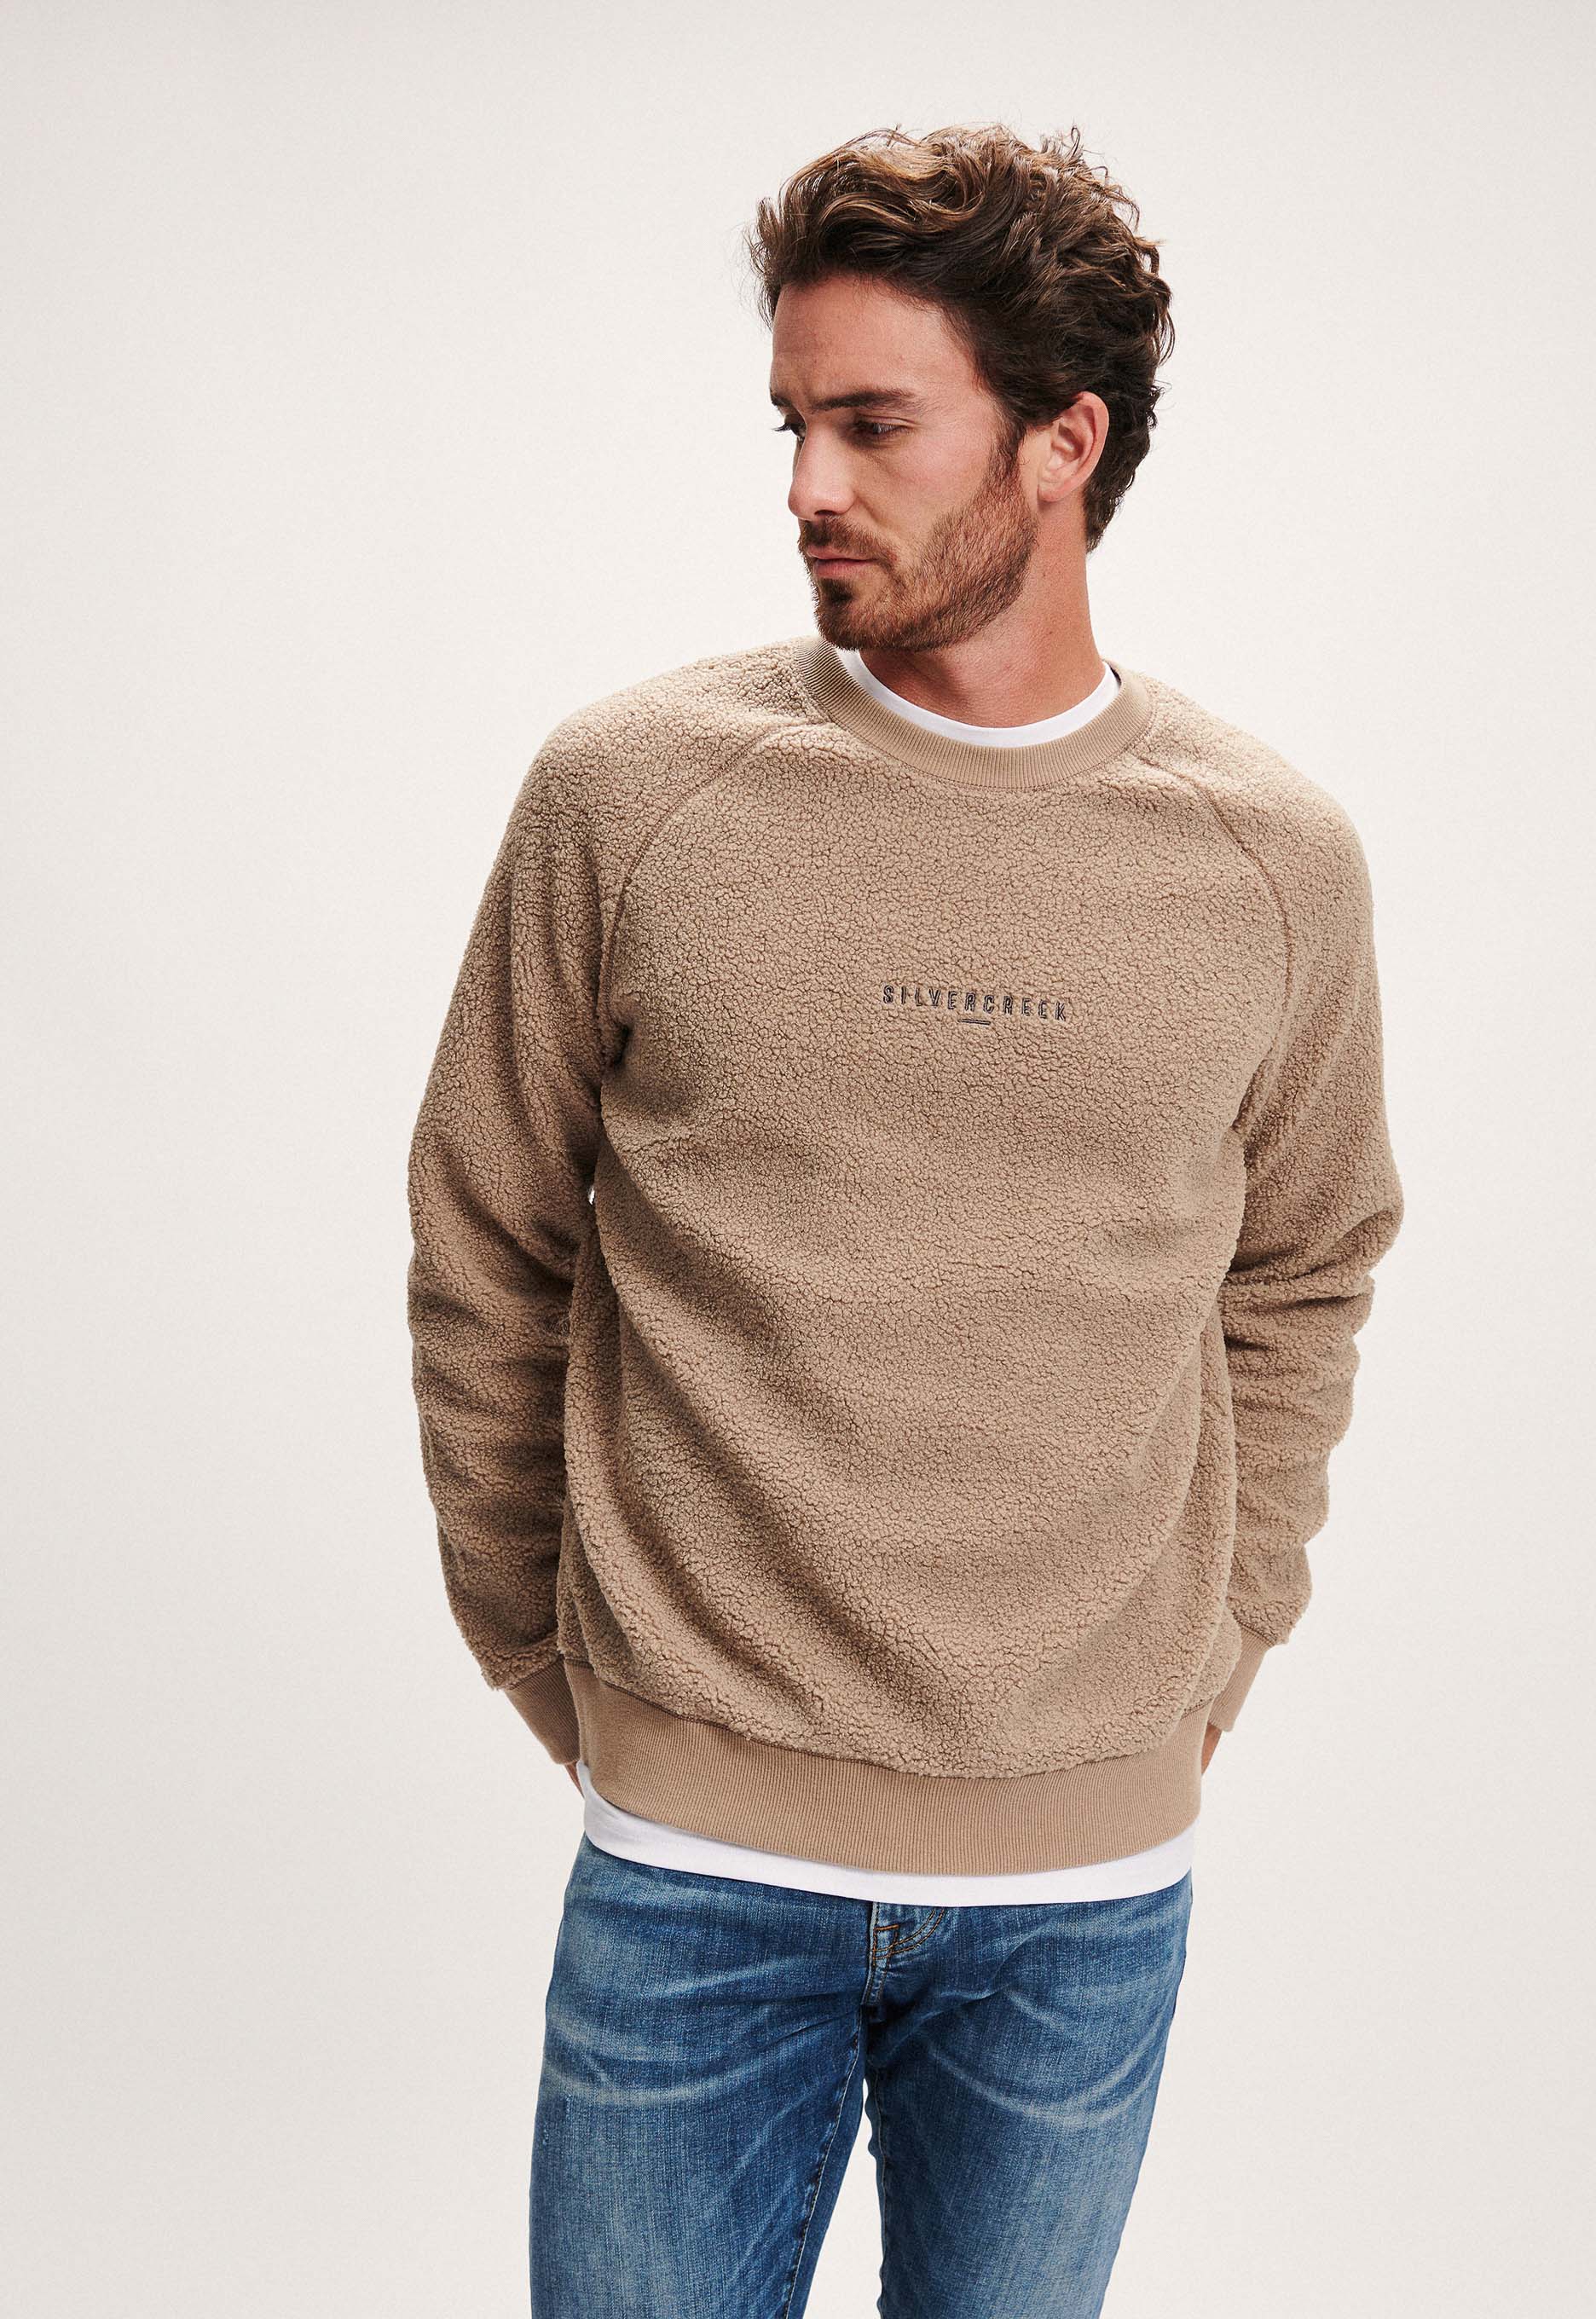 Silvercreek Karson Sweater